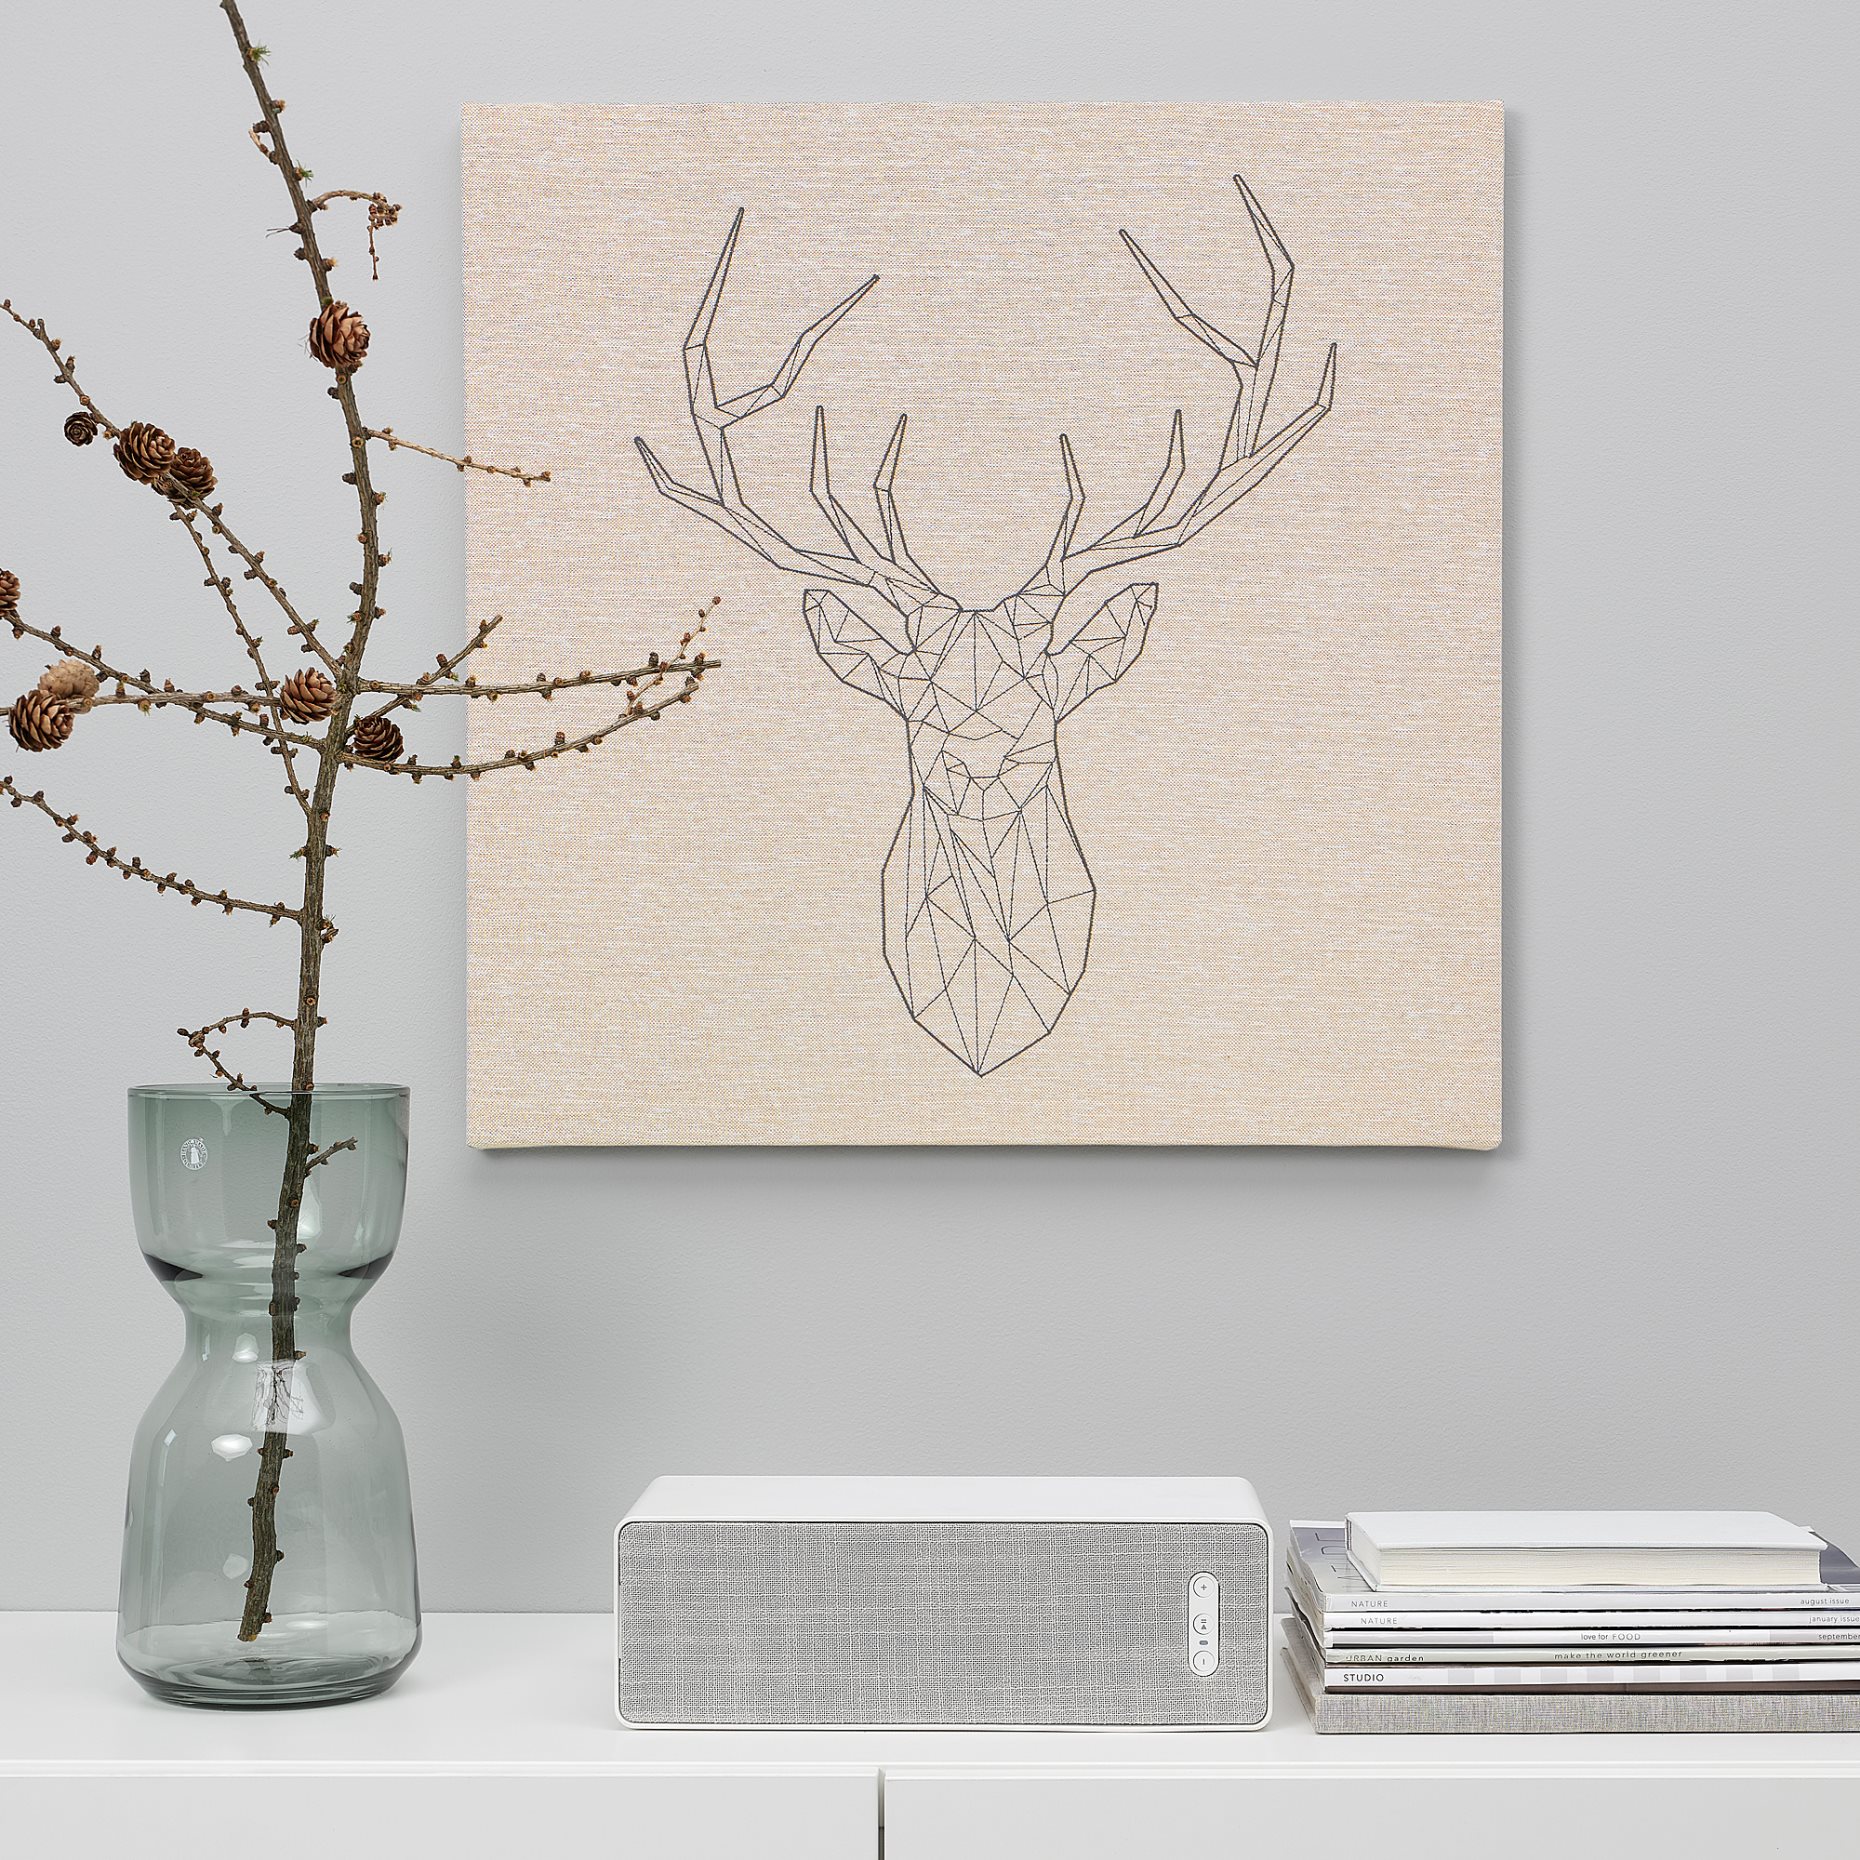 PJATTERYD, picture/ Black deer, 56x56 cm, 104.860.44